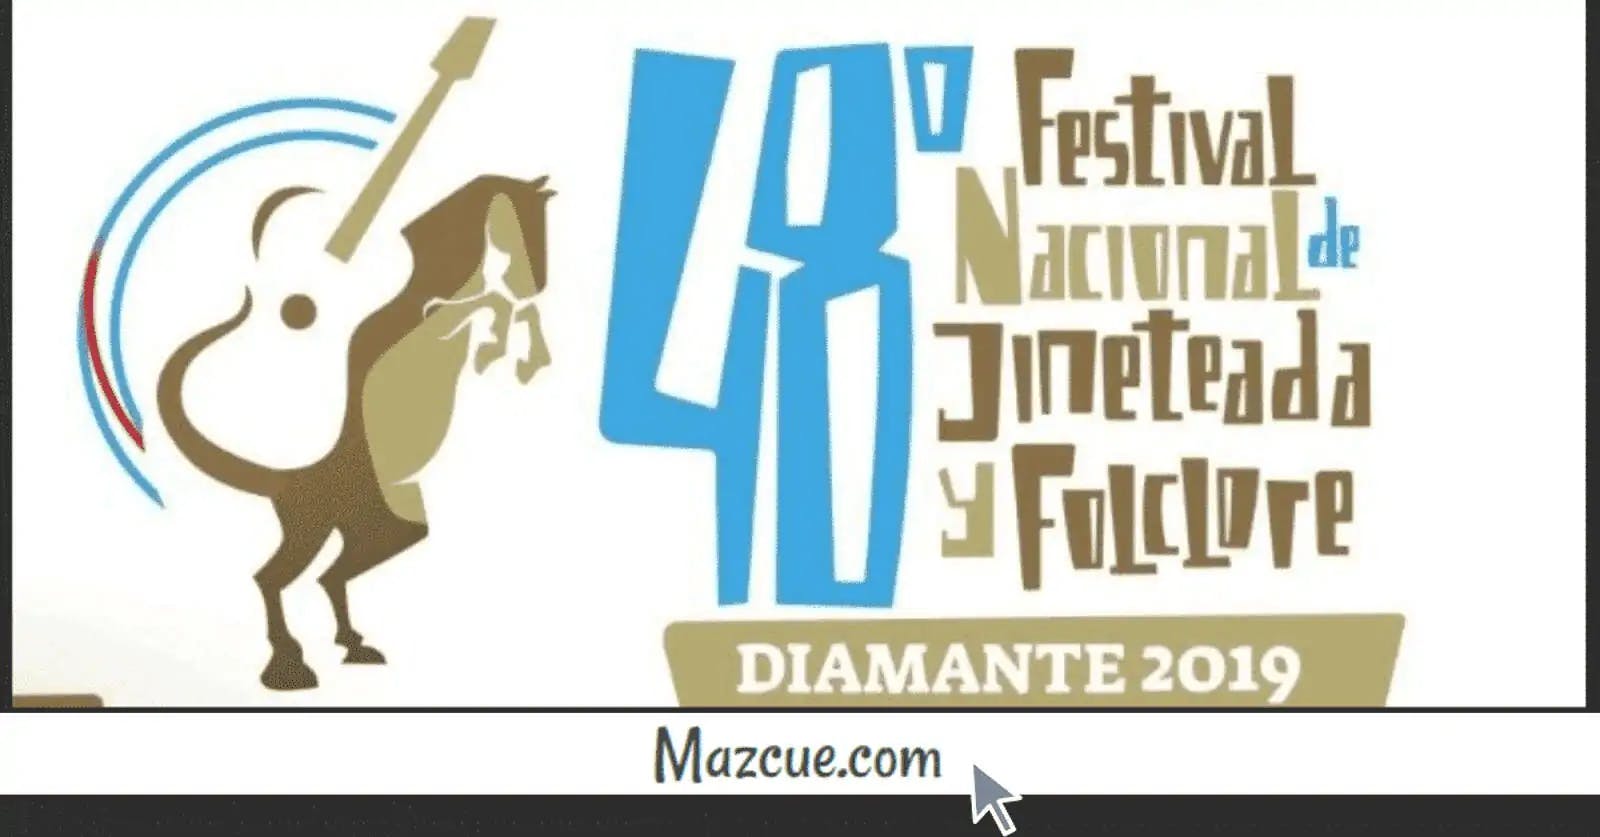 Festival Nacional de Jineteada y Folclore Diamante 2019